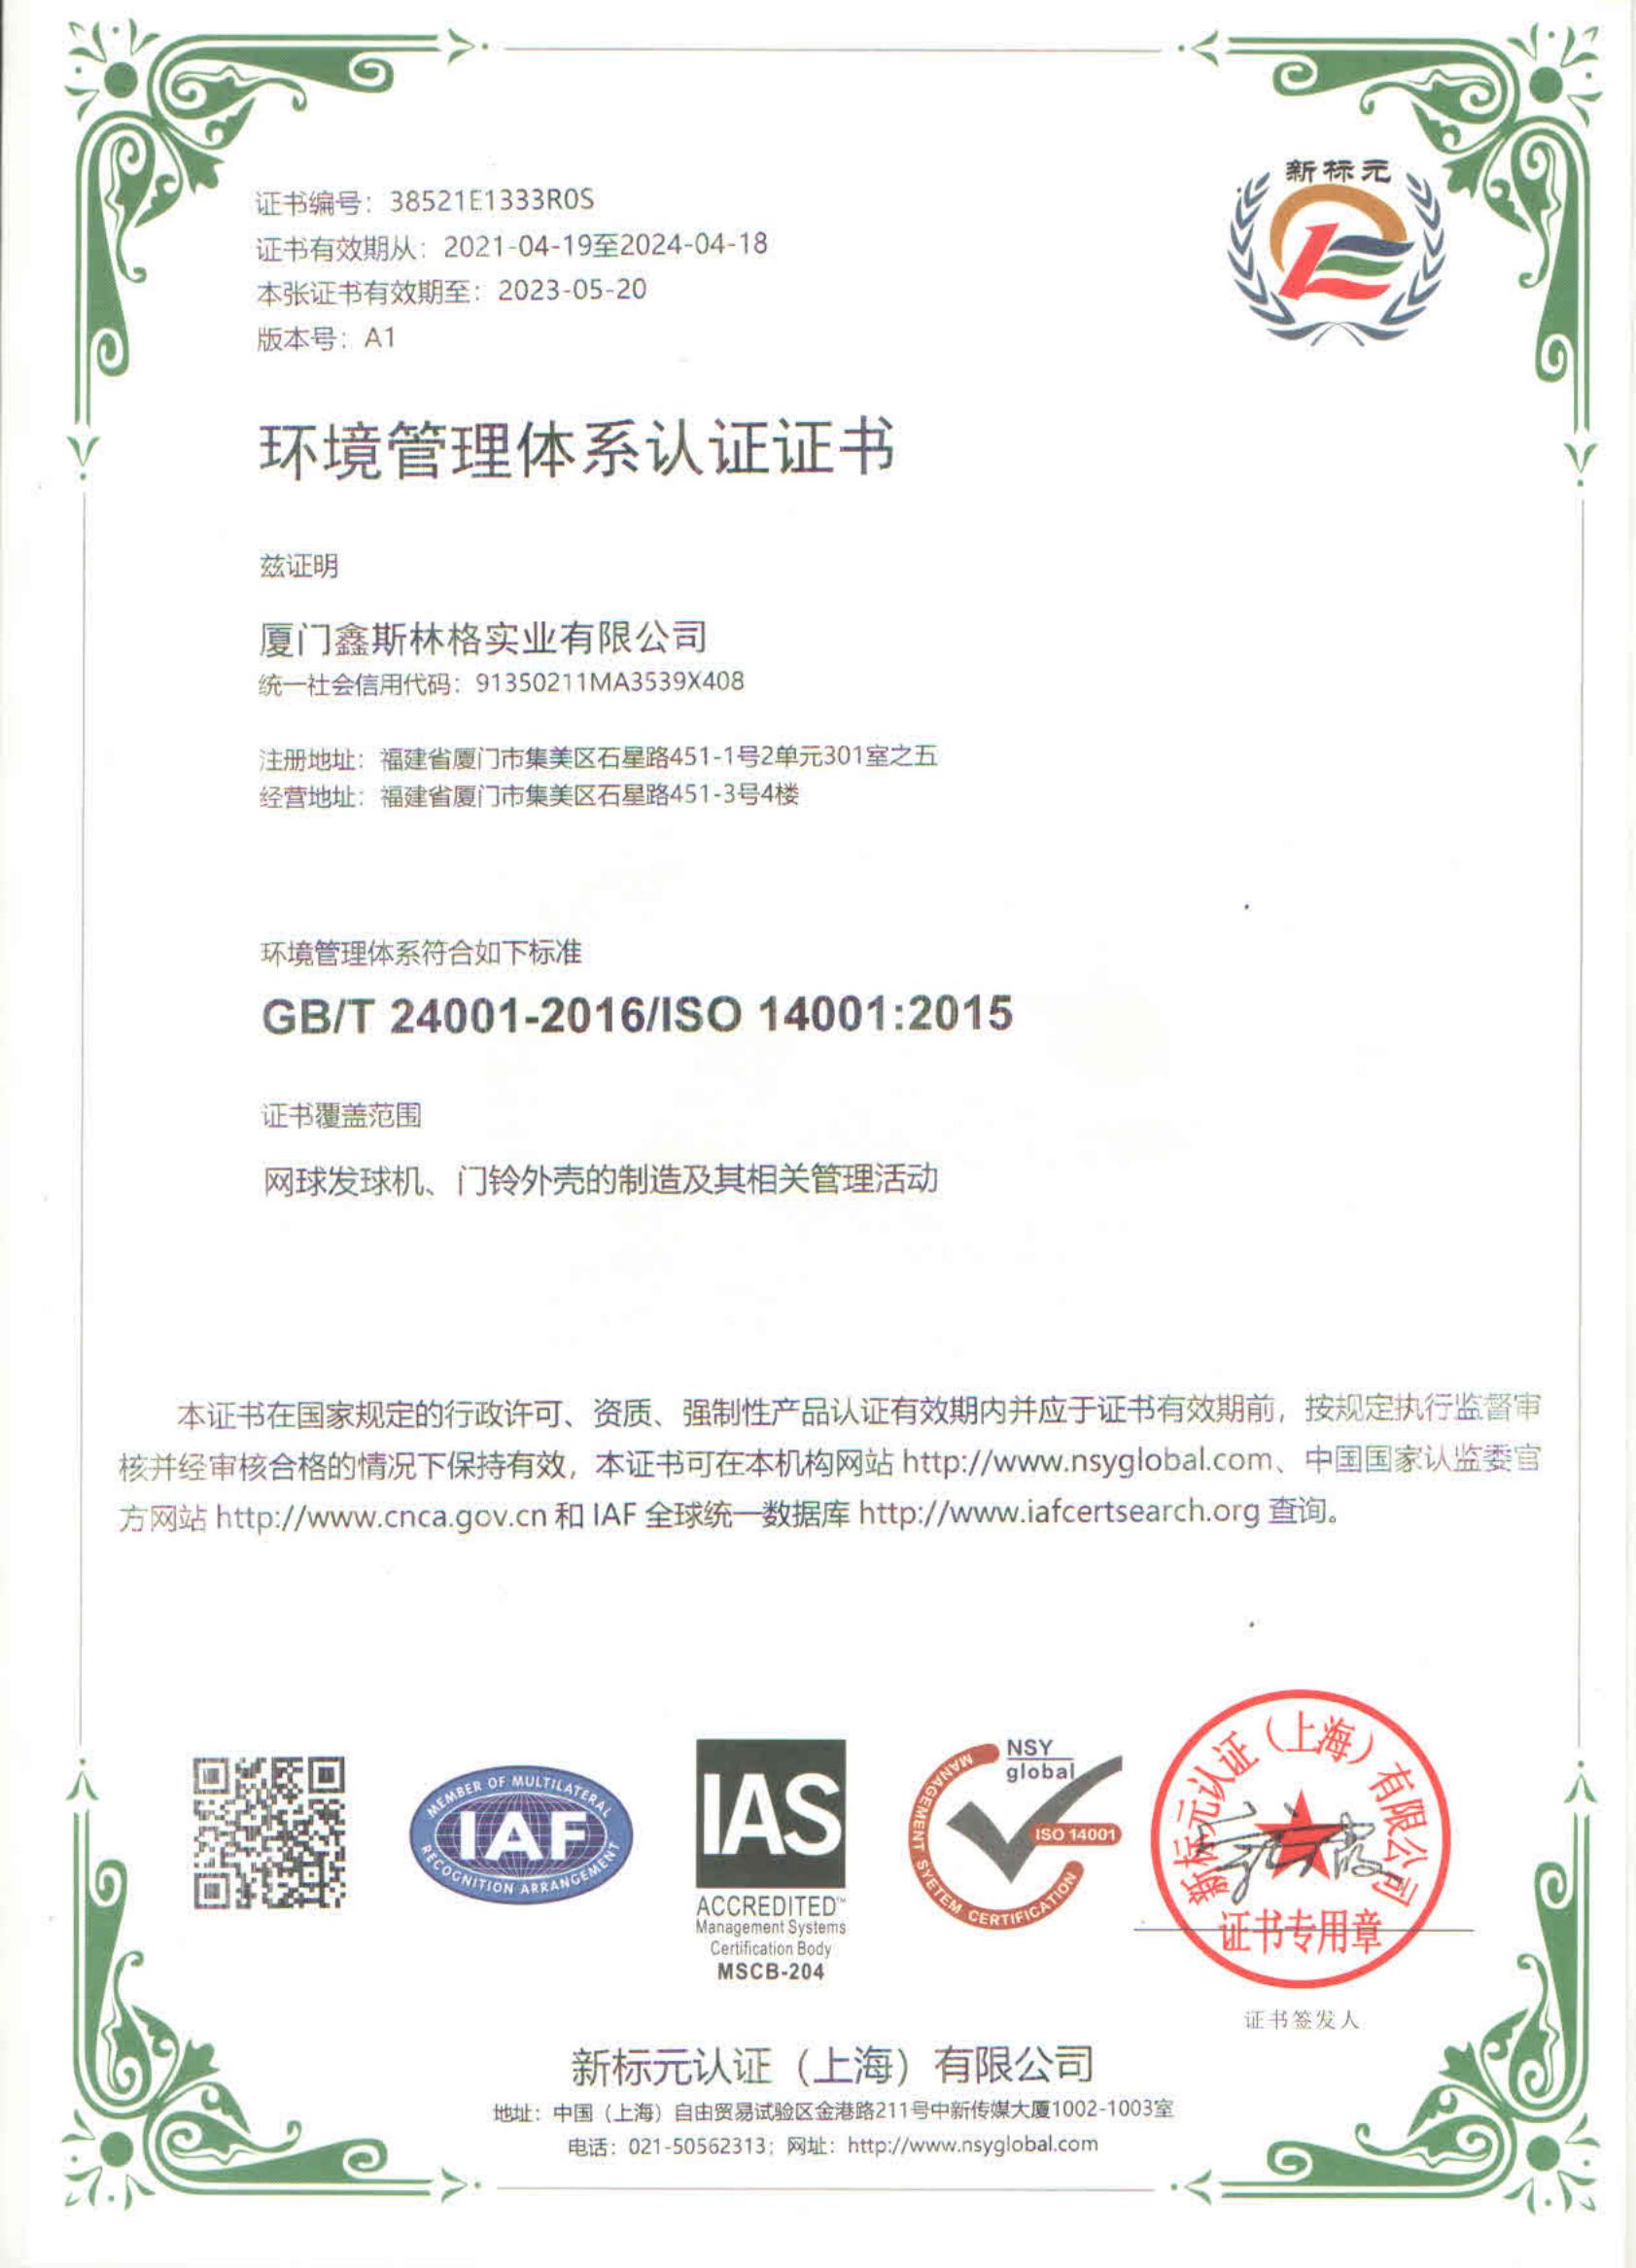 鑫 斯林格 - 环境 管理 体系 证书 证书 ISO 14001 中 英文 _00